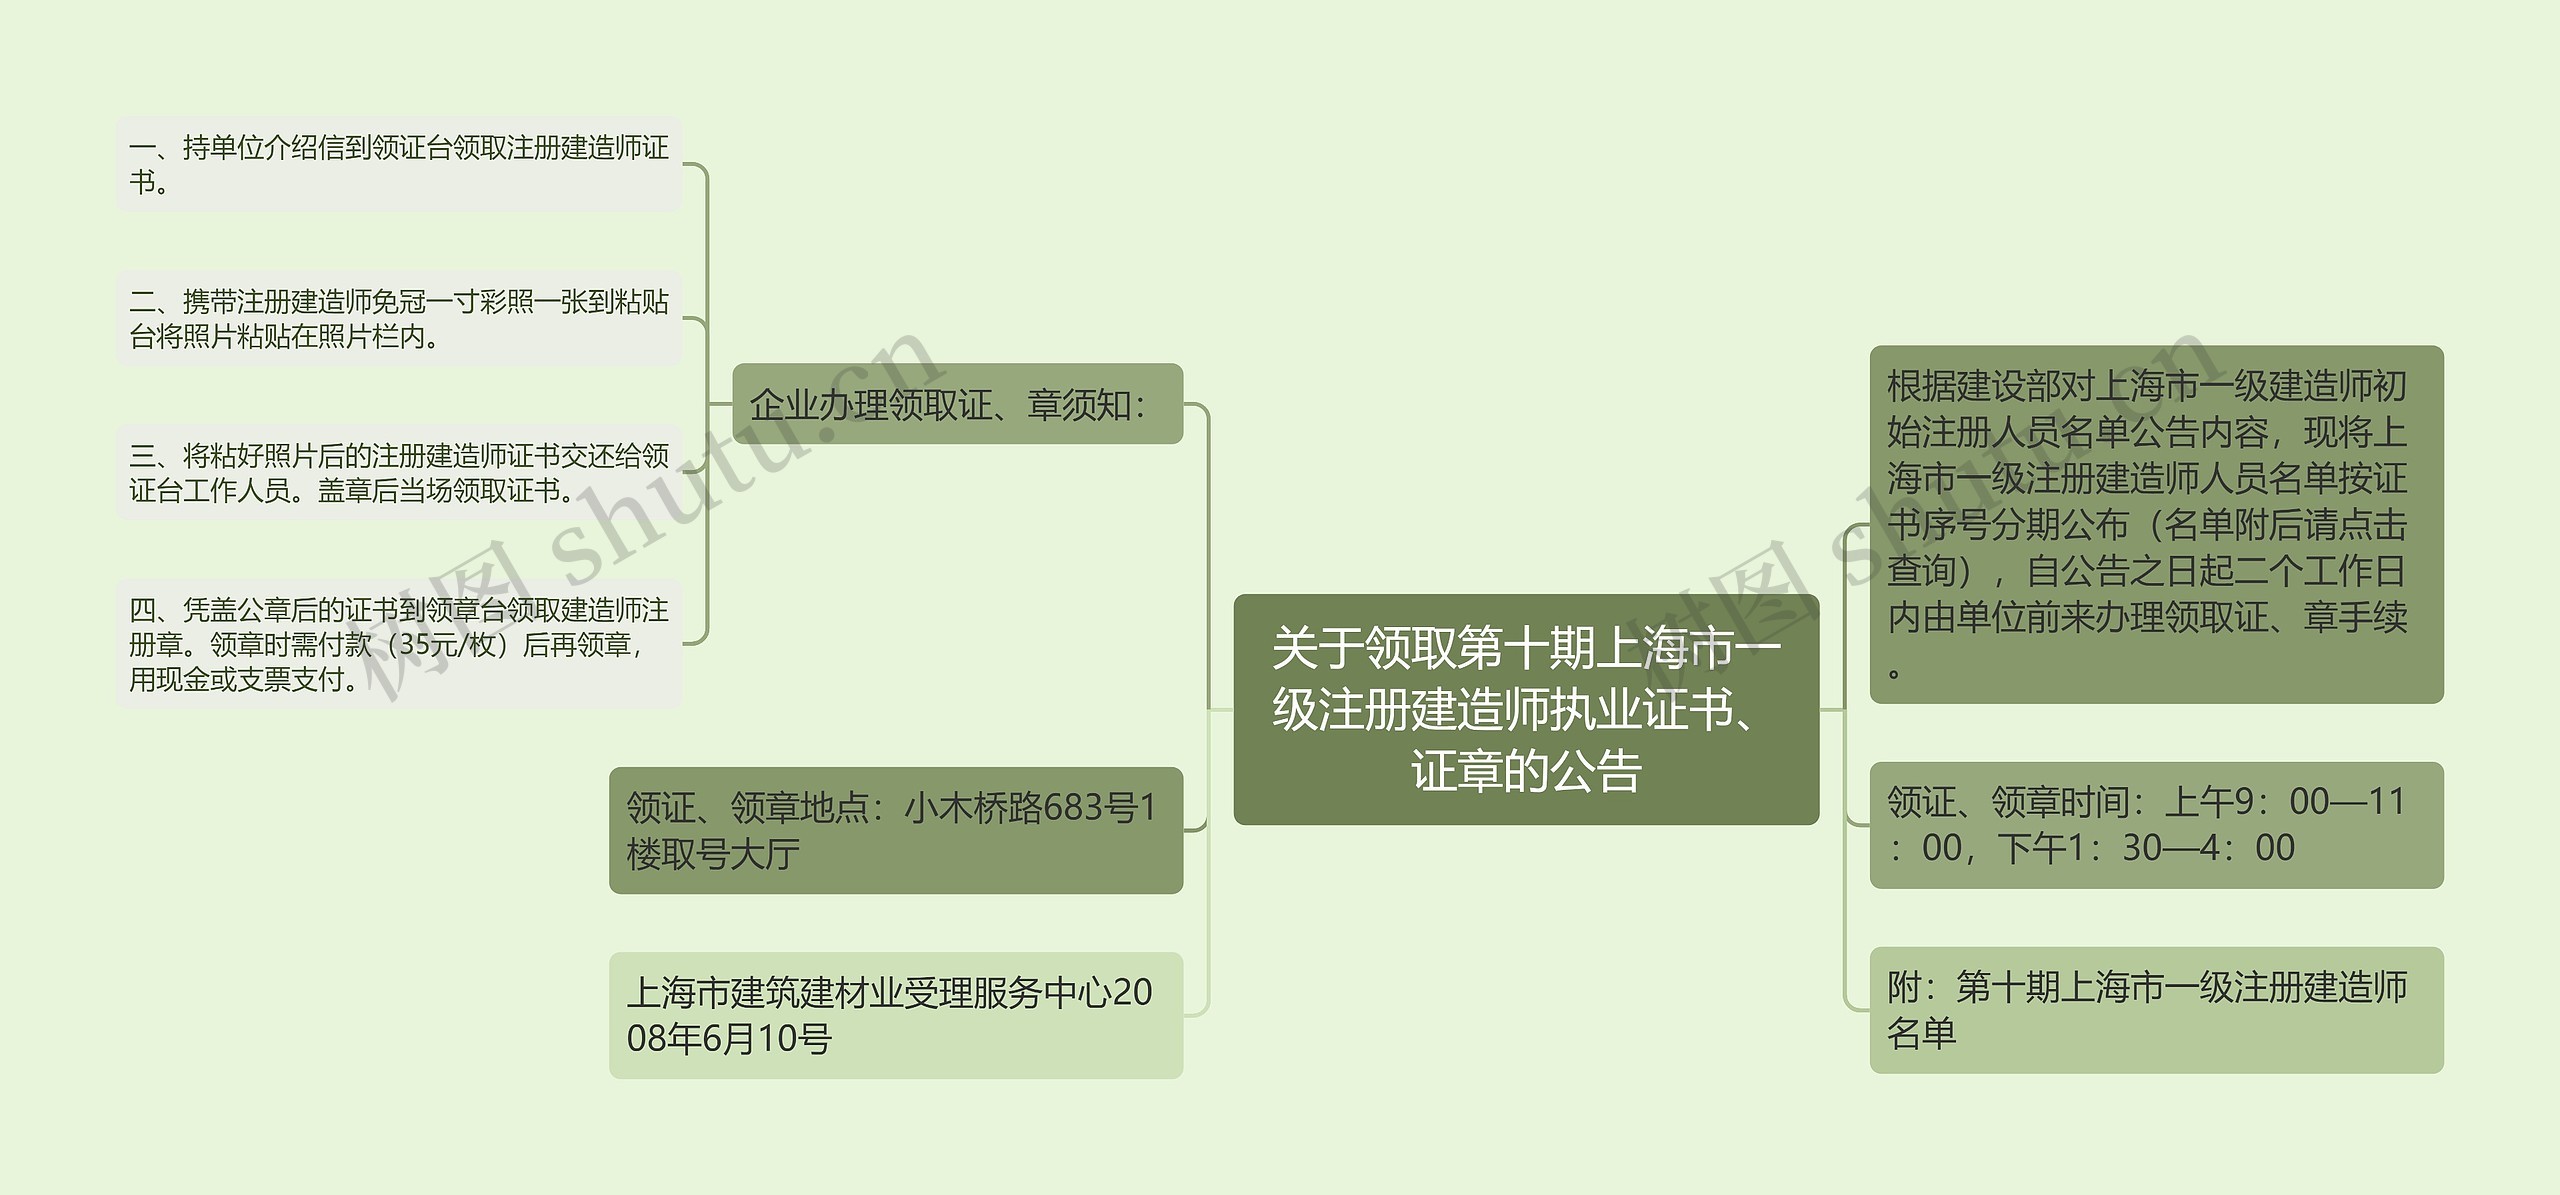 关于领取第十期上海市一级注册建造师执业证书、证章的公告思维导图